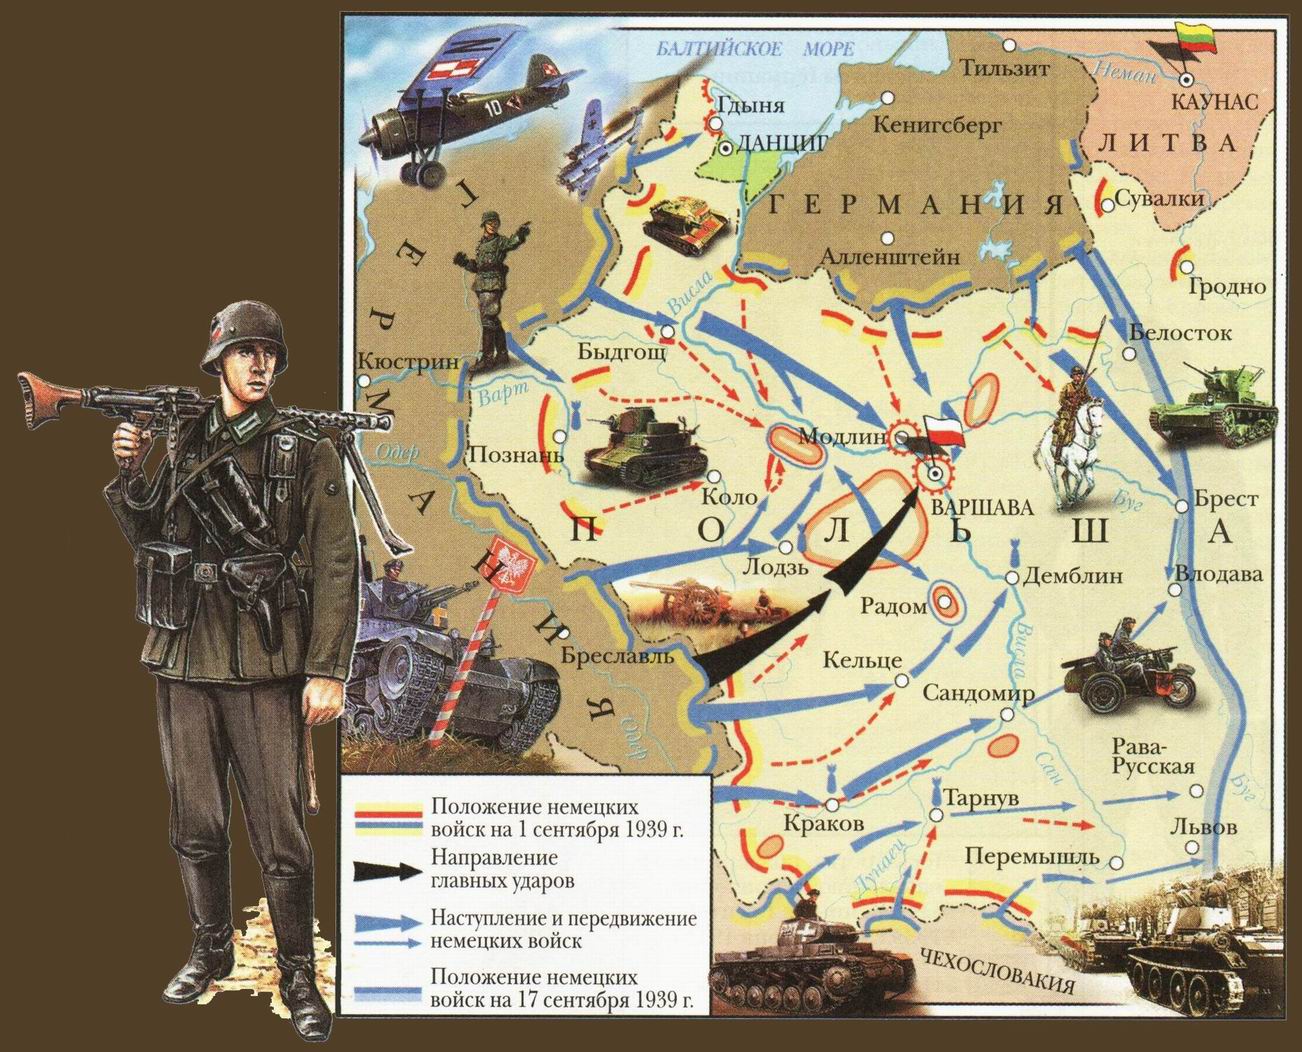 Название немецких нападений. Нападение Германии на Польшу 1 сентября 1939 начало 2 мировой войны. План по захвату Польши Германией. План нападения на Польшу 1939.